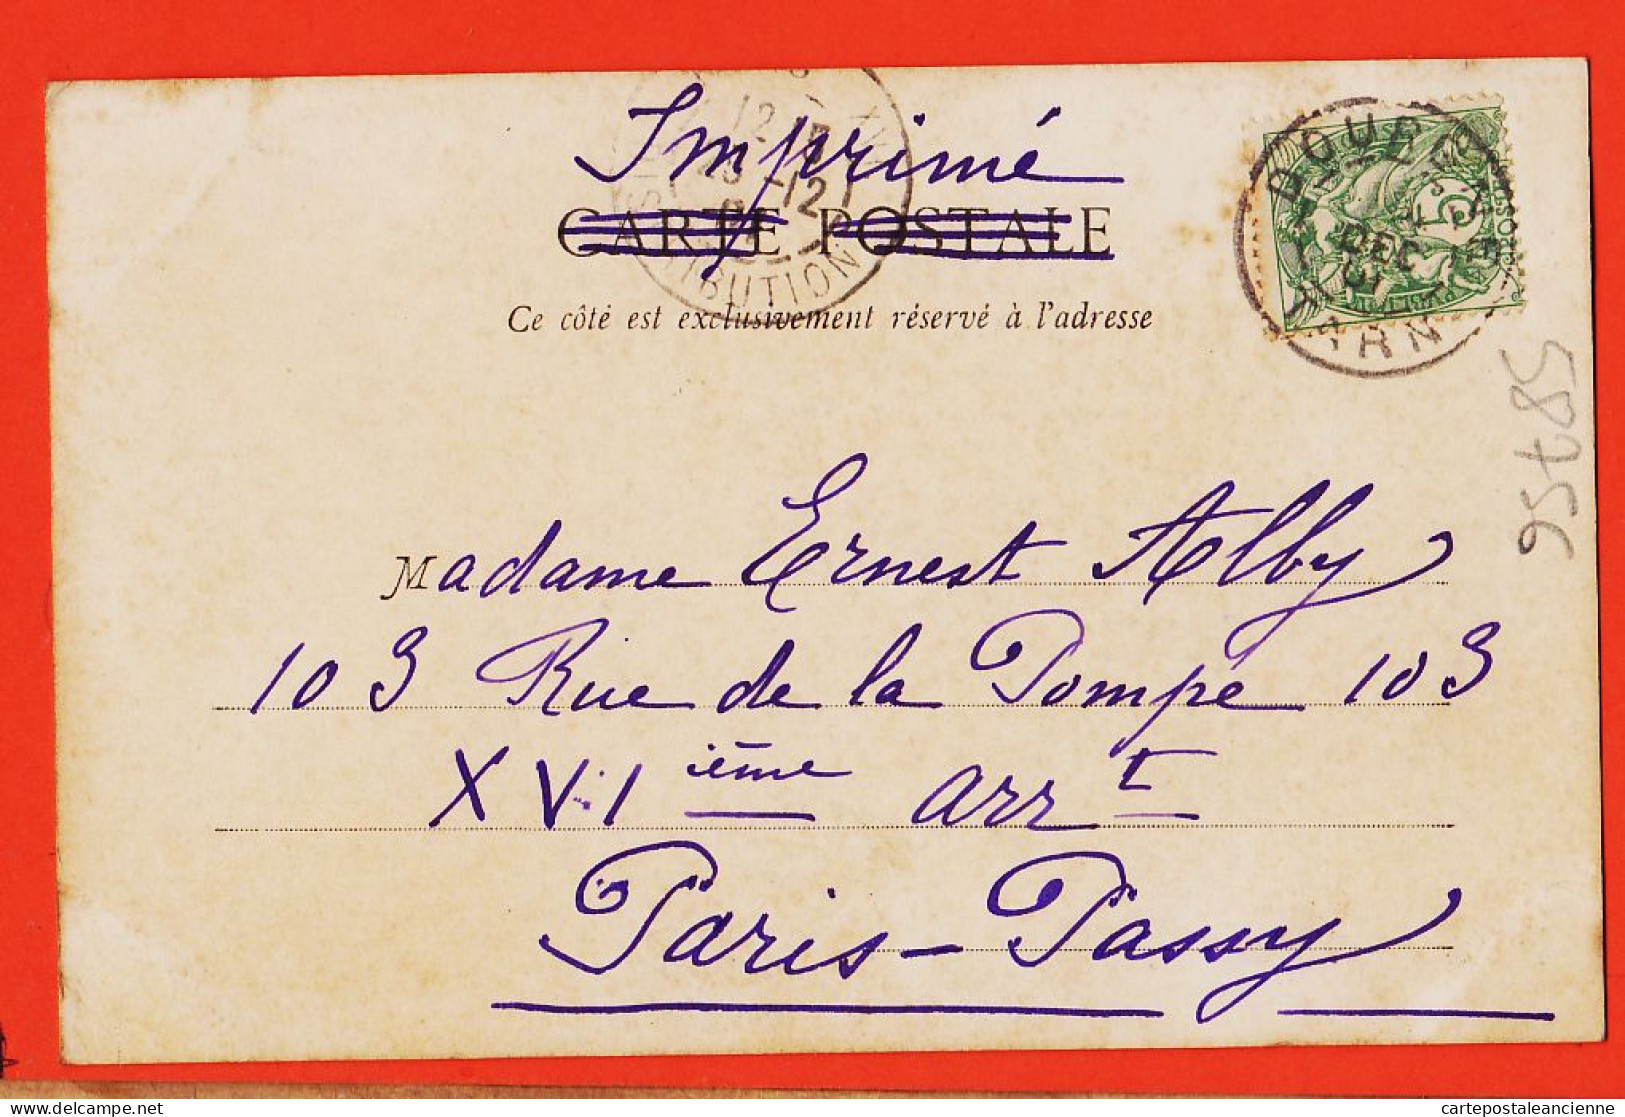 37797 / ⭐ DOURGNE Près CASTRES 81-Tarn Epicerie MARTY Place Fontaine 1901 à Ernest ALBY Rue Pompe Paris-Passy Ed. SAGNES - Dourgne